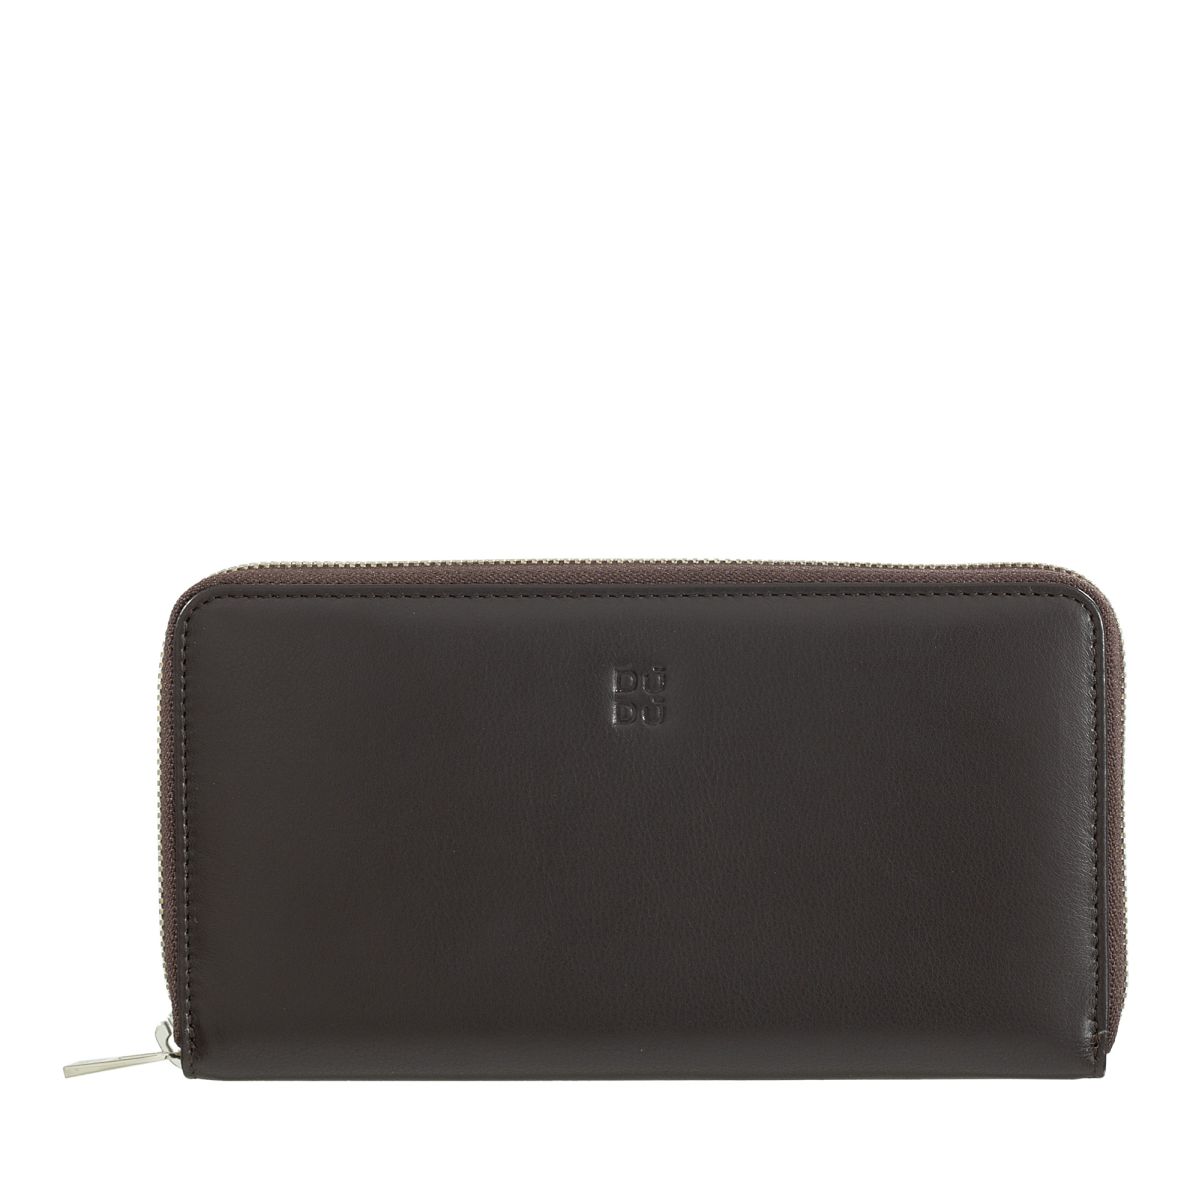 Zip around RFID wallet - Dark Brown